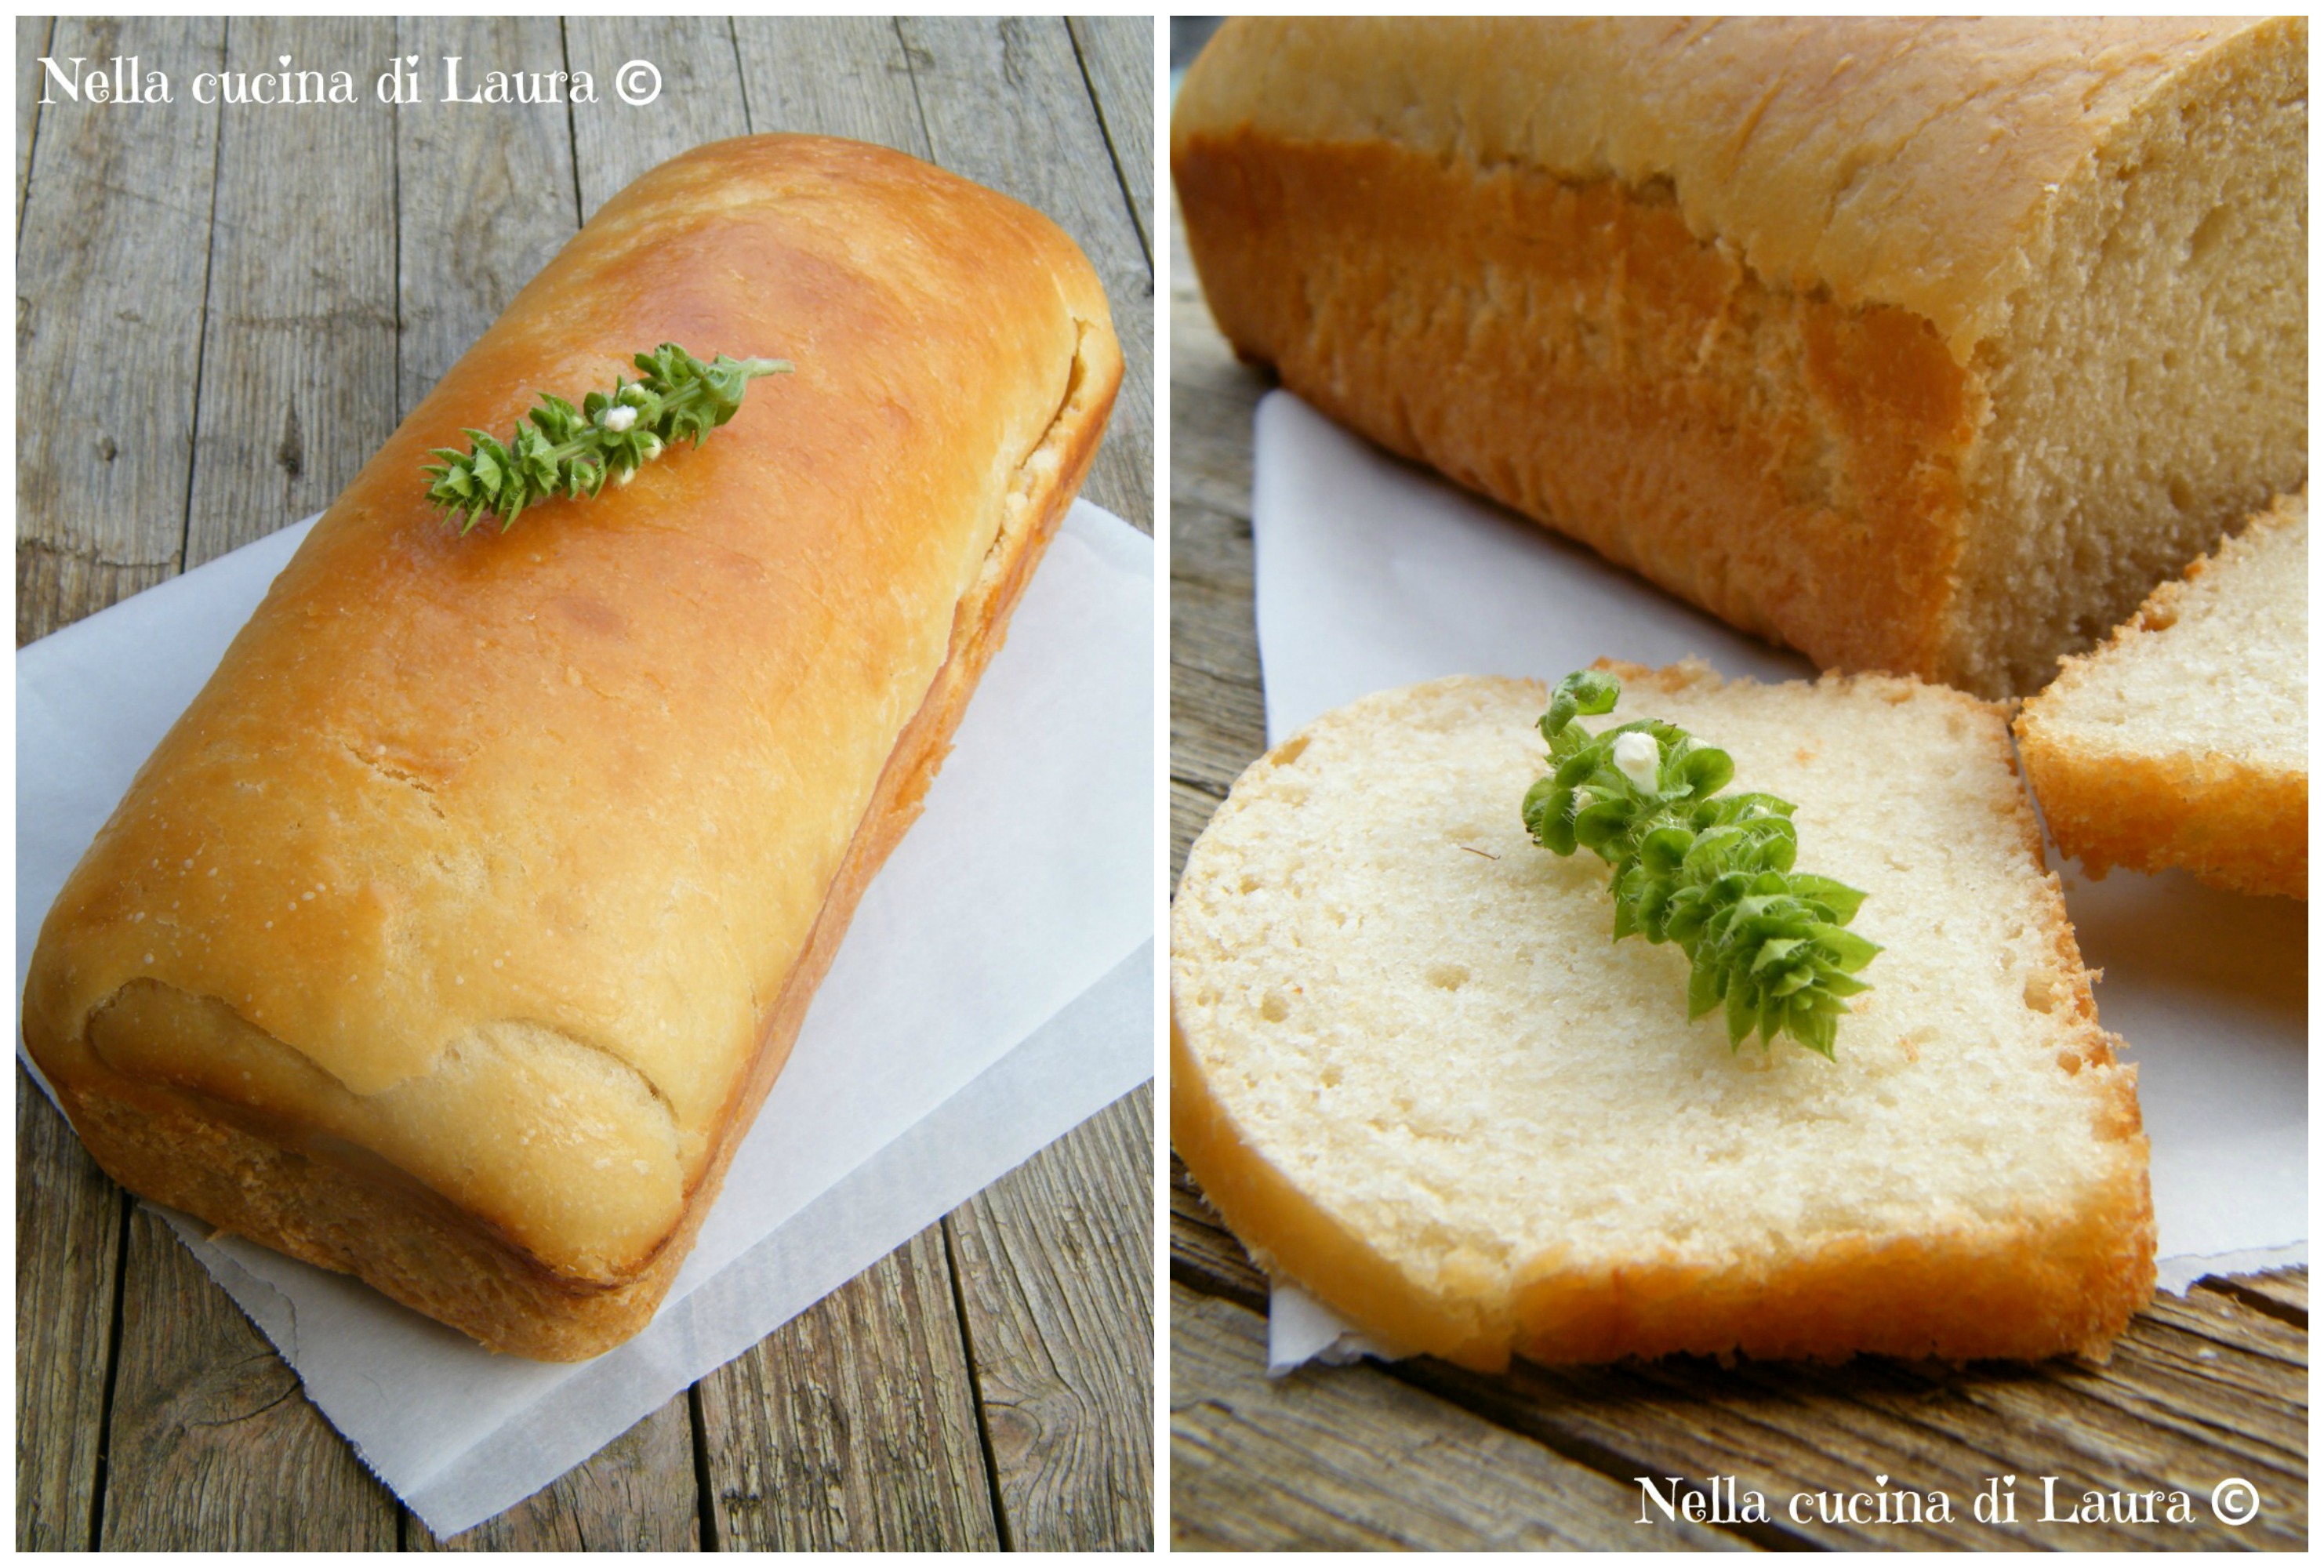 panino grigliato con pane bianco a lievitazione naturale e coppa piacentina - nella cucina di laura